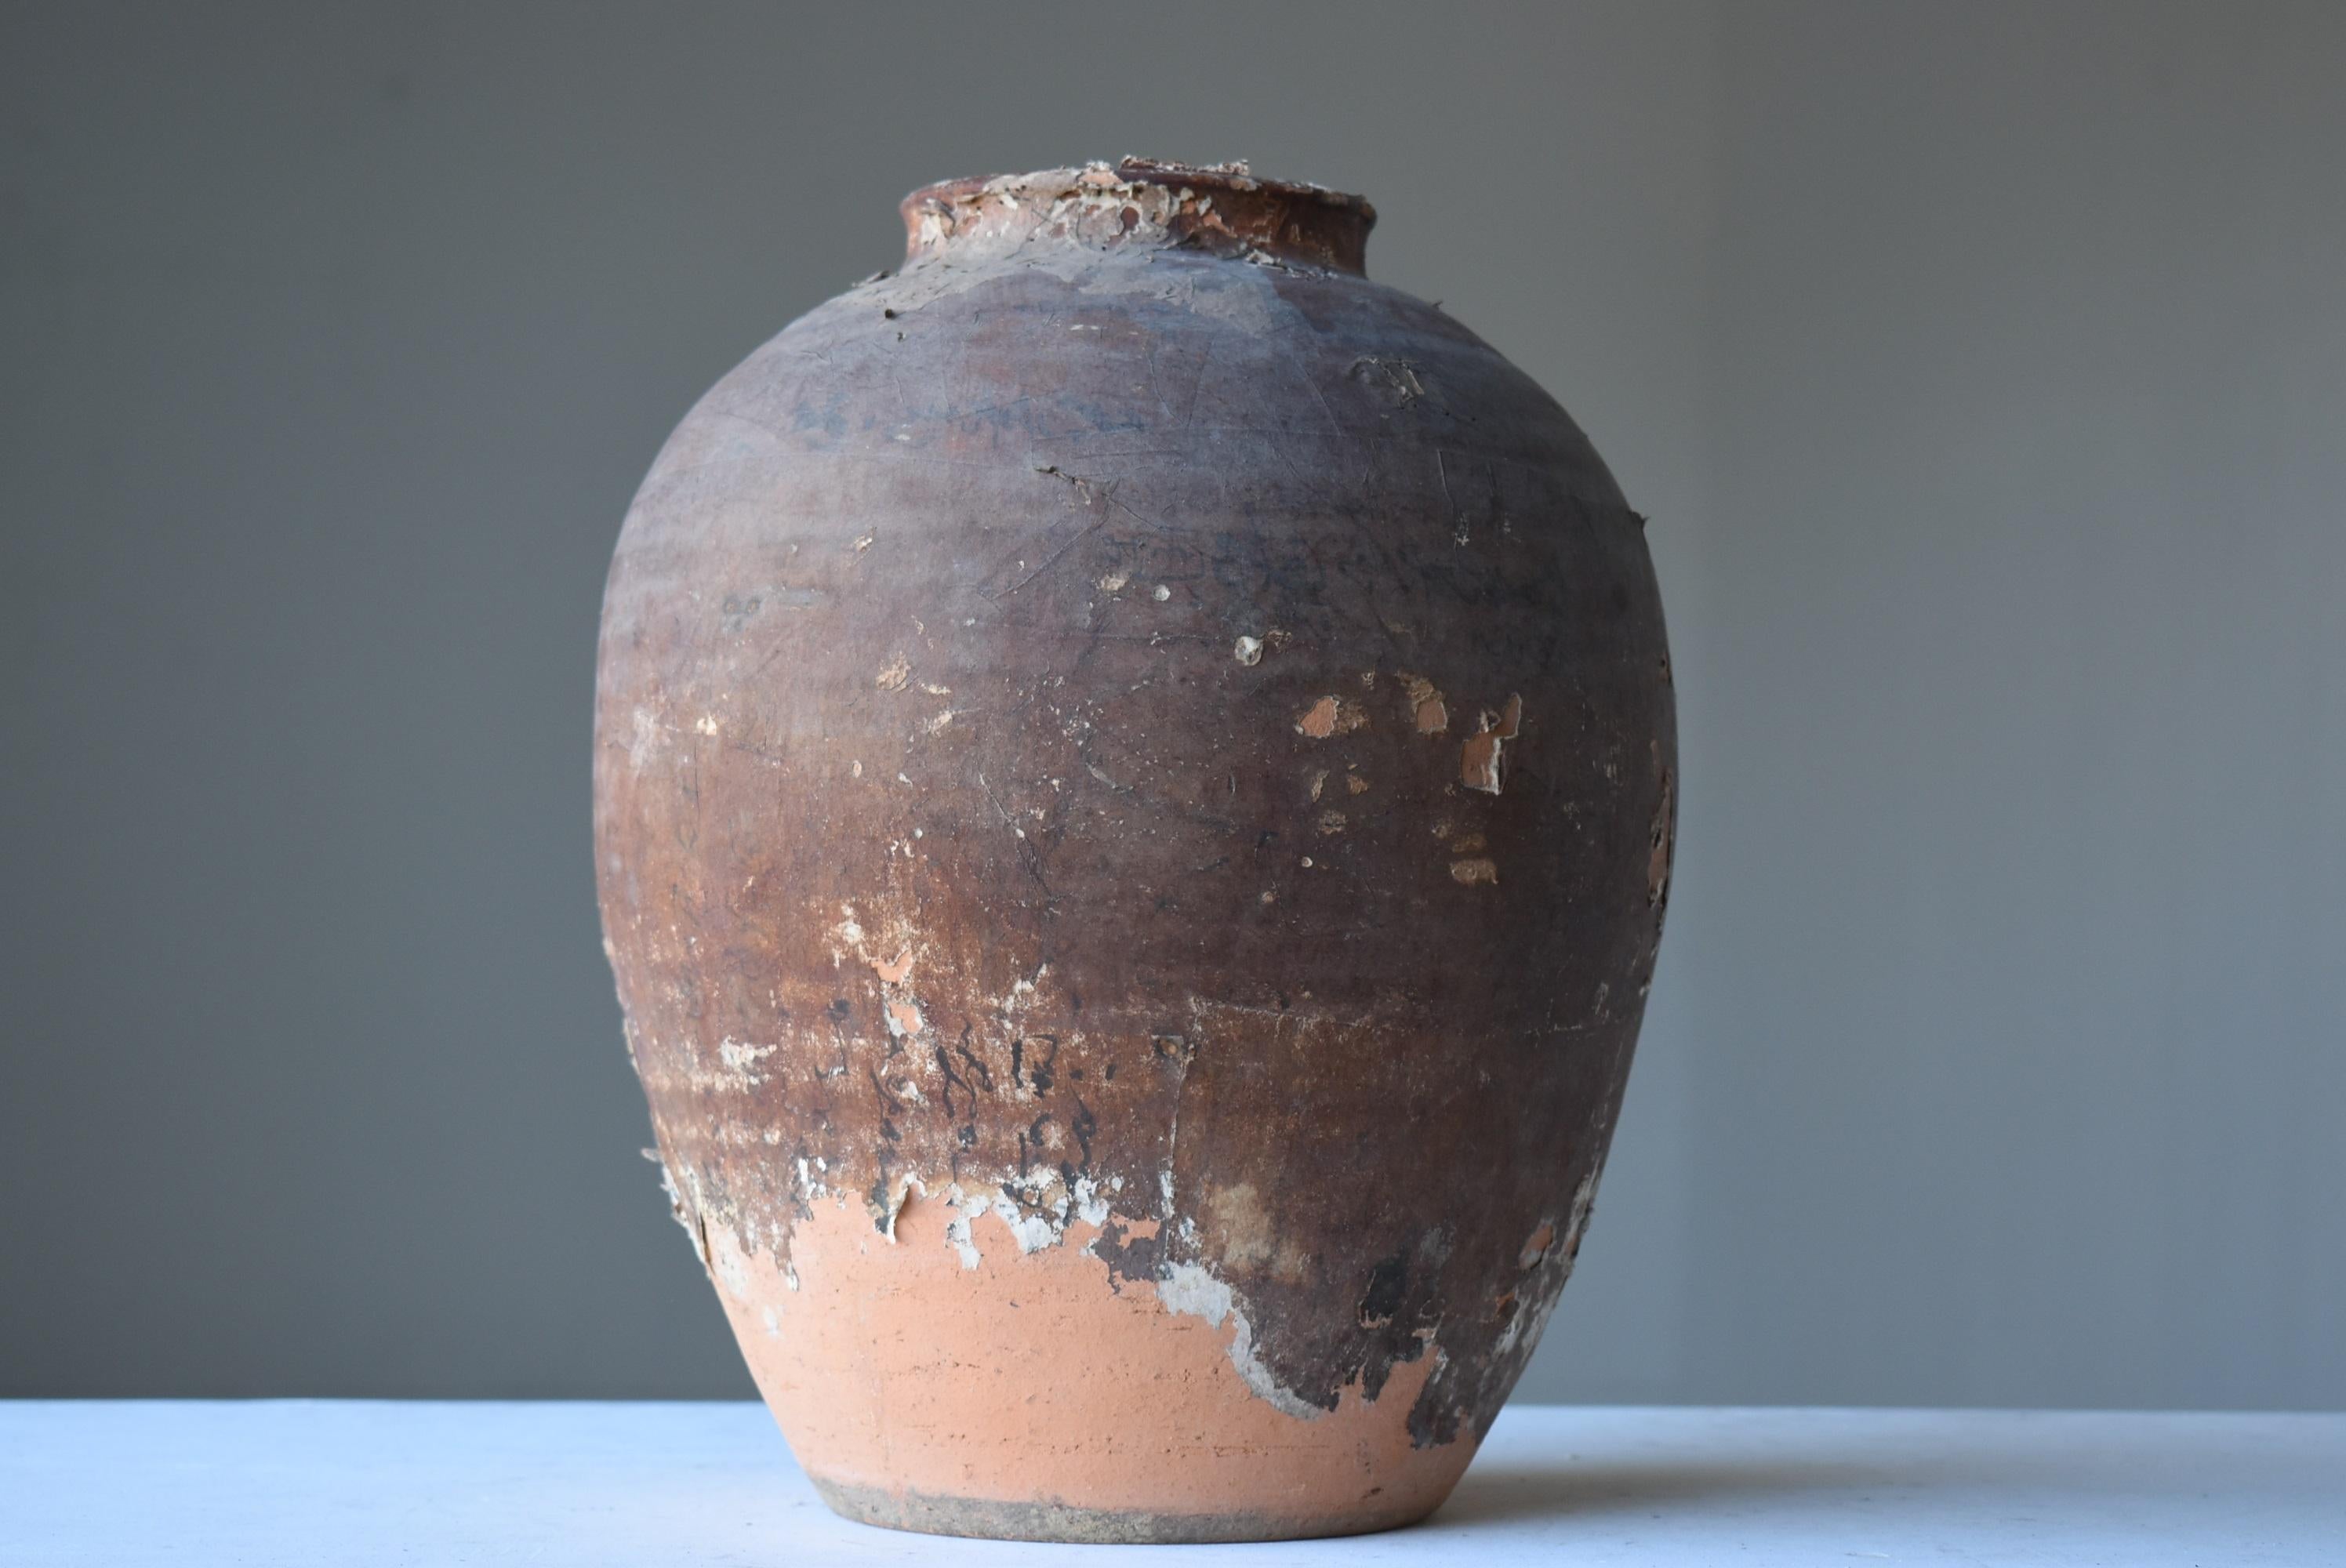 Japanese Old Pottery 1800s-1860s/Antique Vessel Flower Vase Wabisabi Tsubo Jar 1